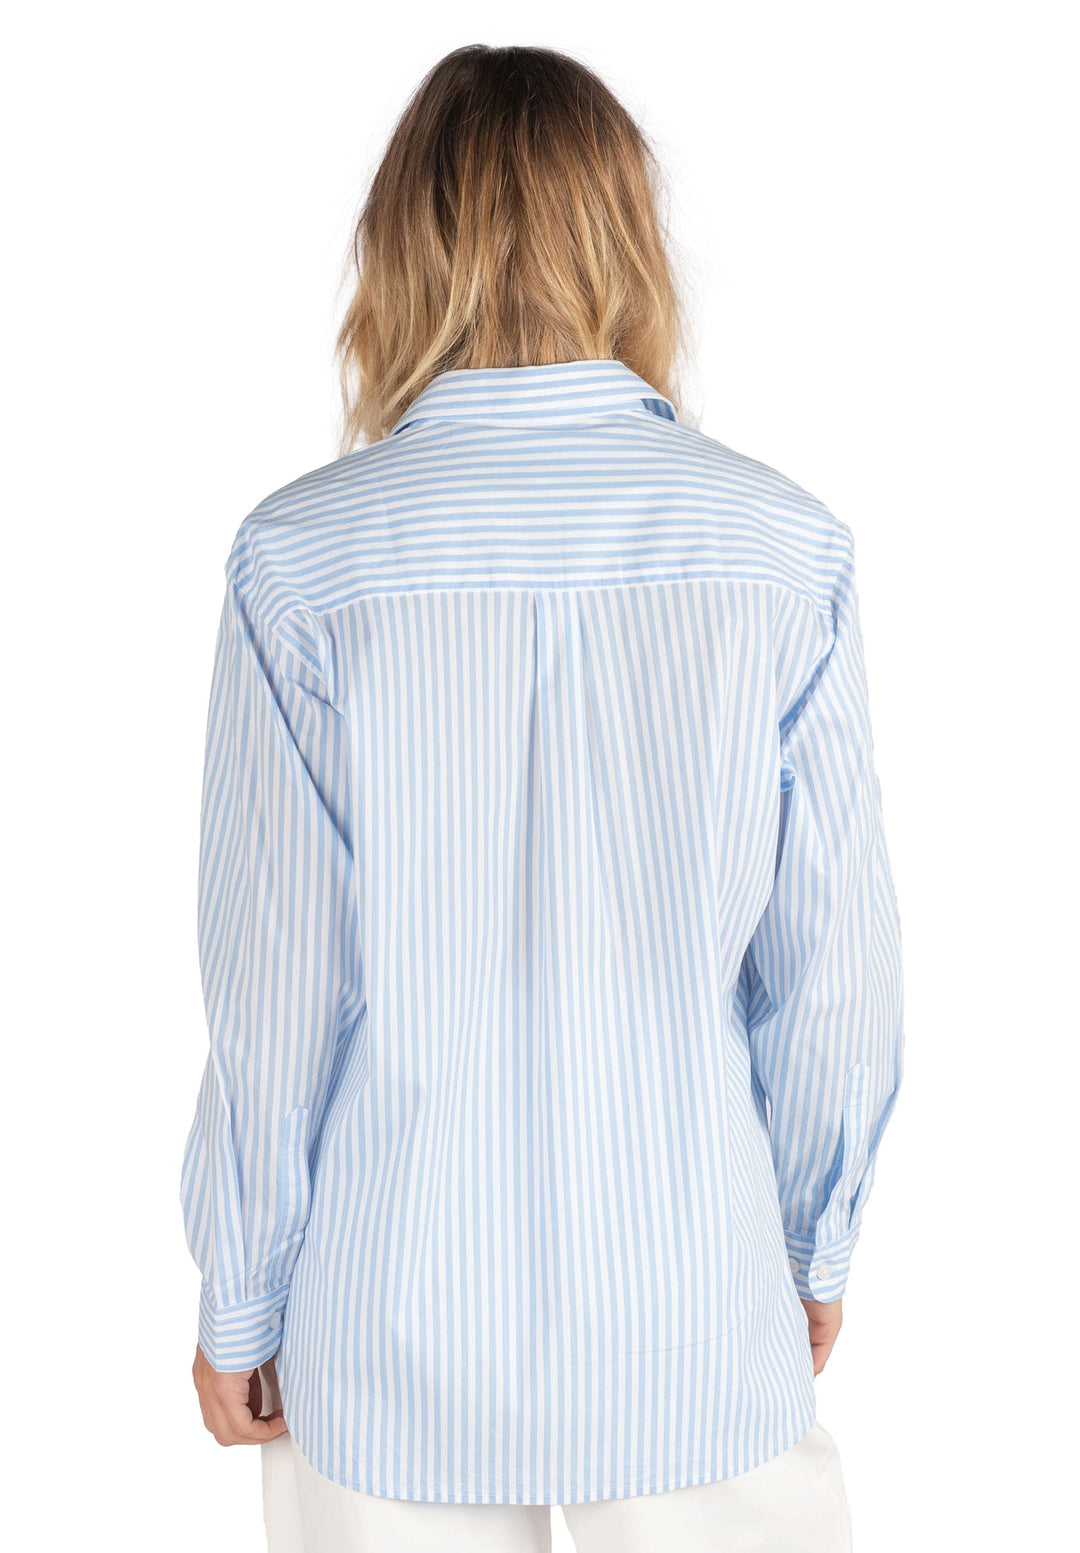 Poppy-Cotton Sky Blue Stripes Oversized Cotton Shirt